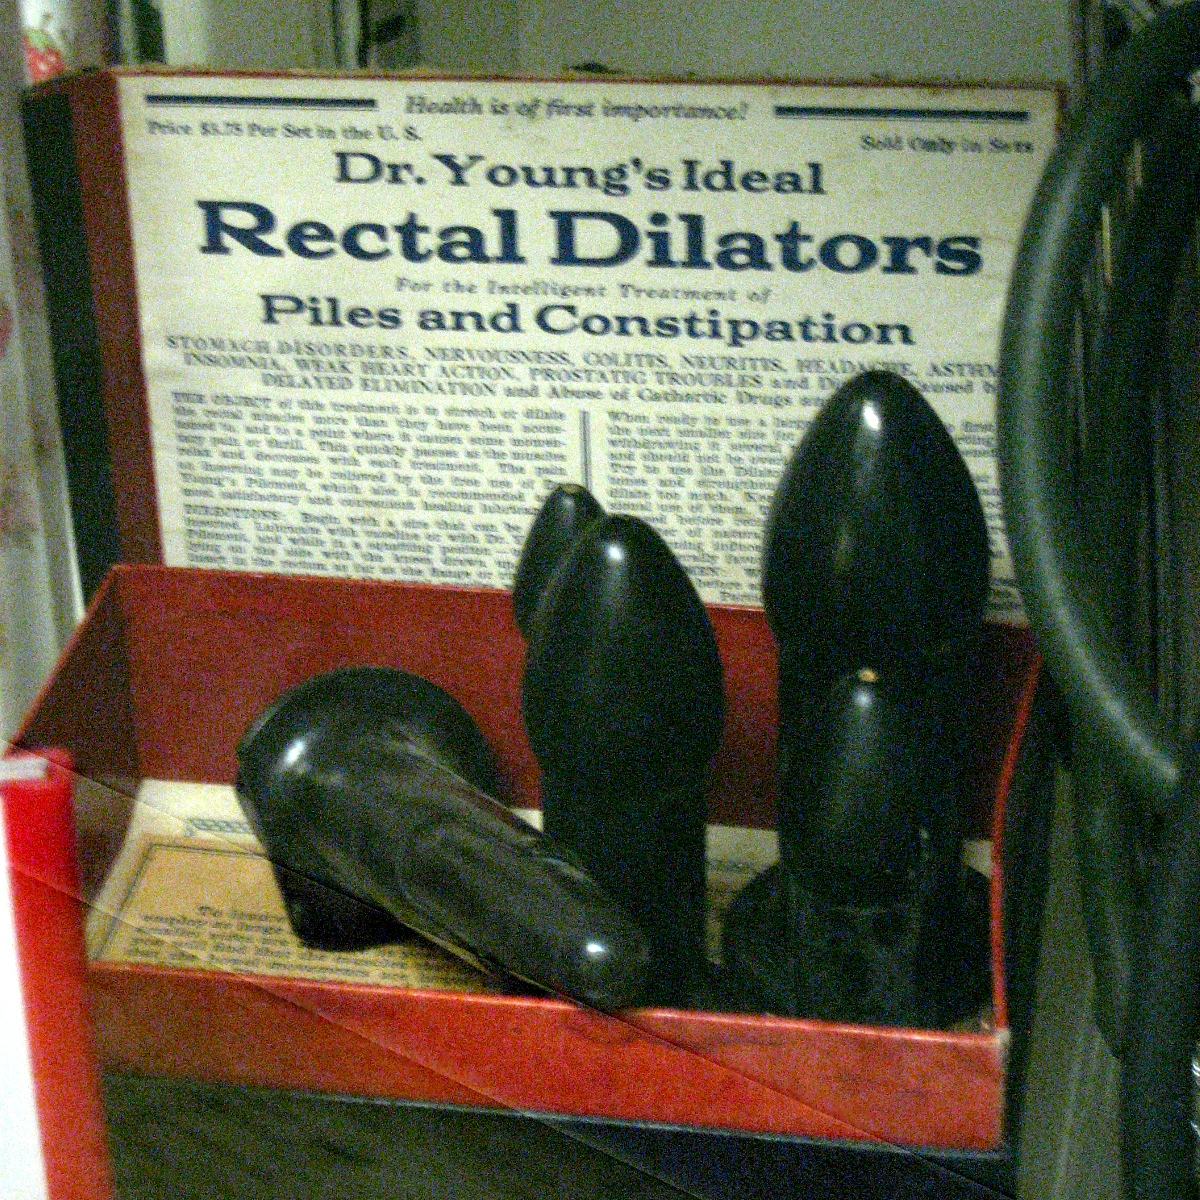 Rectal dilator - Wikipedia